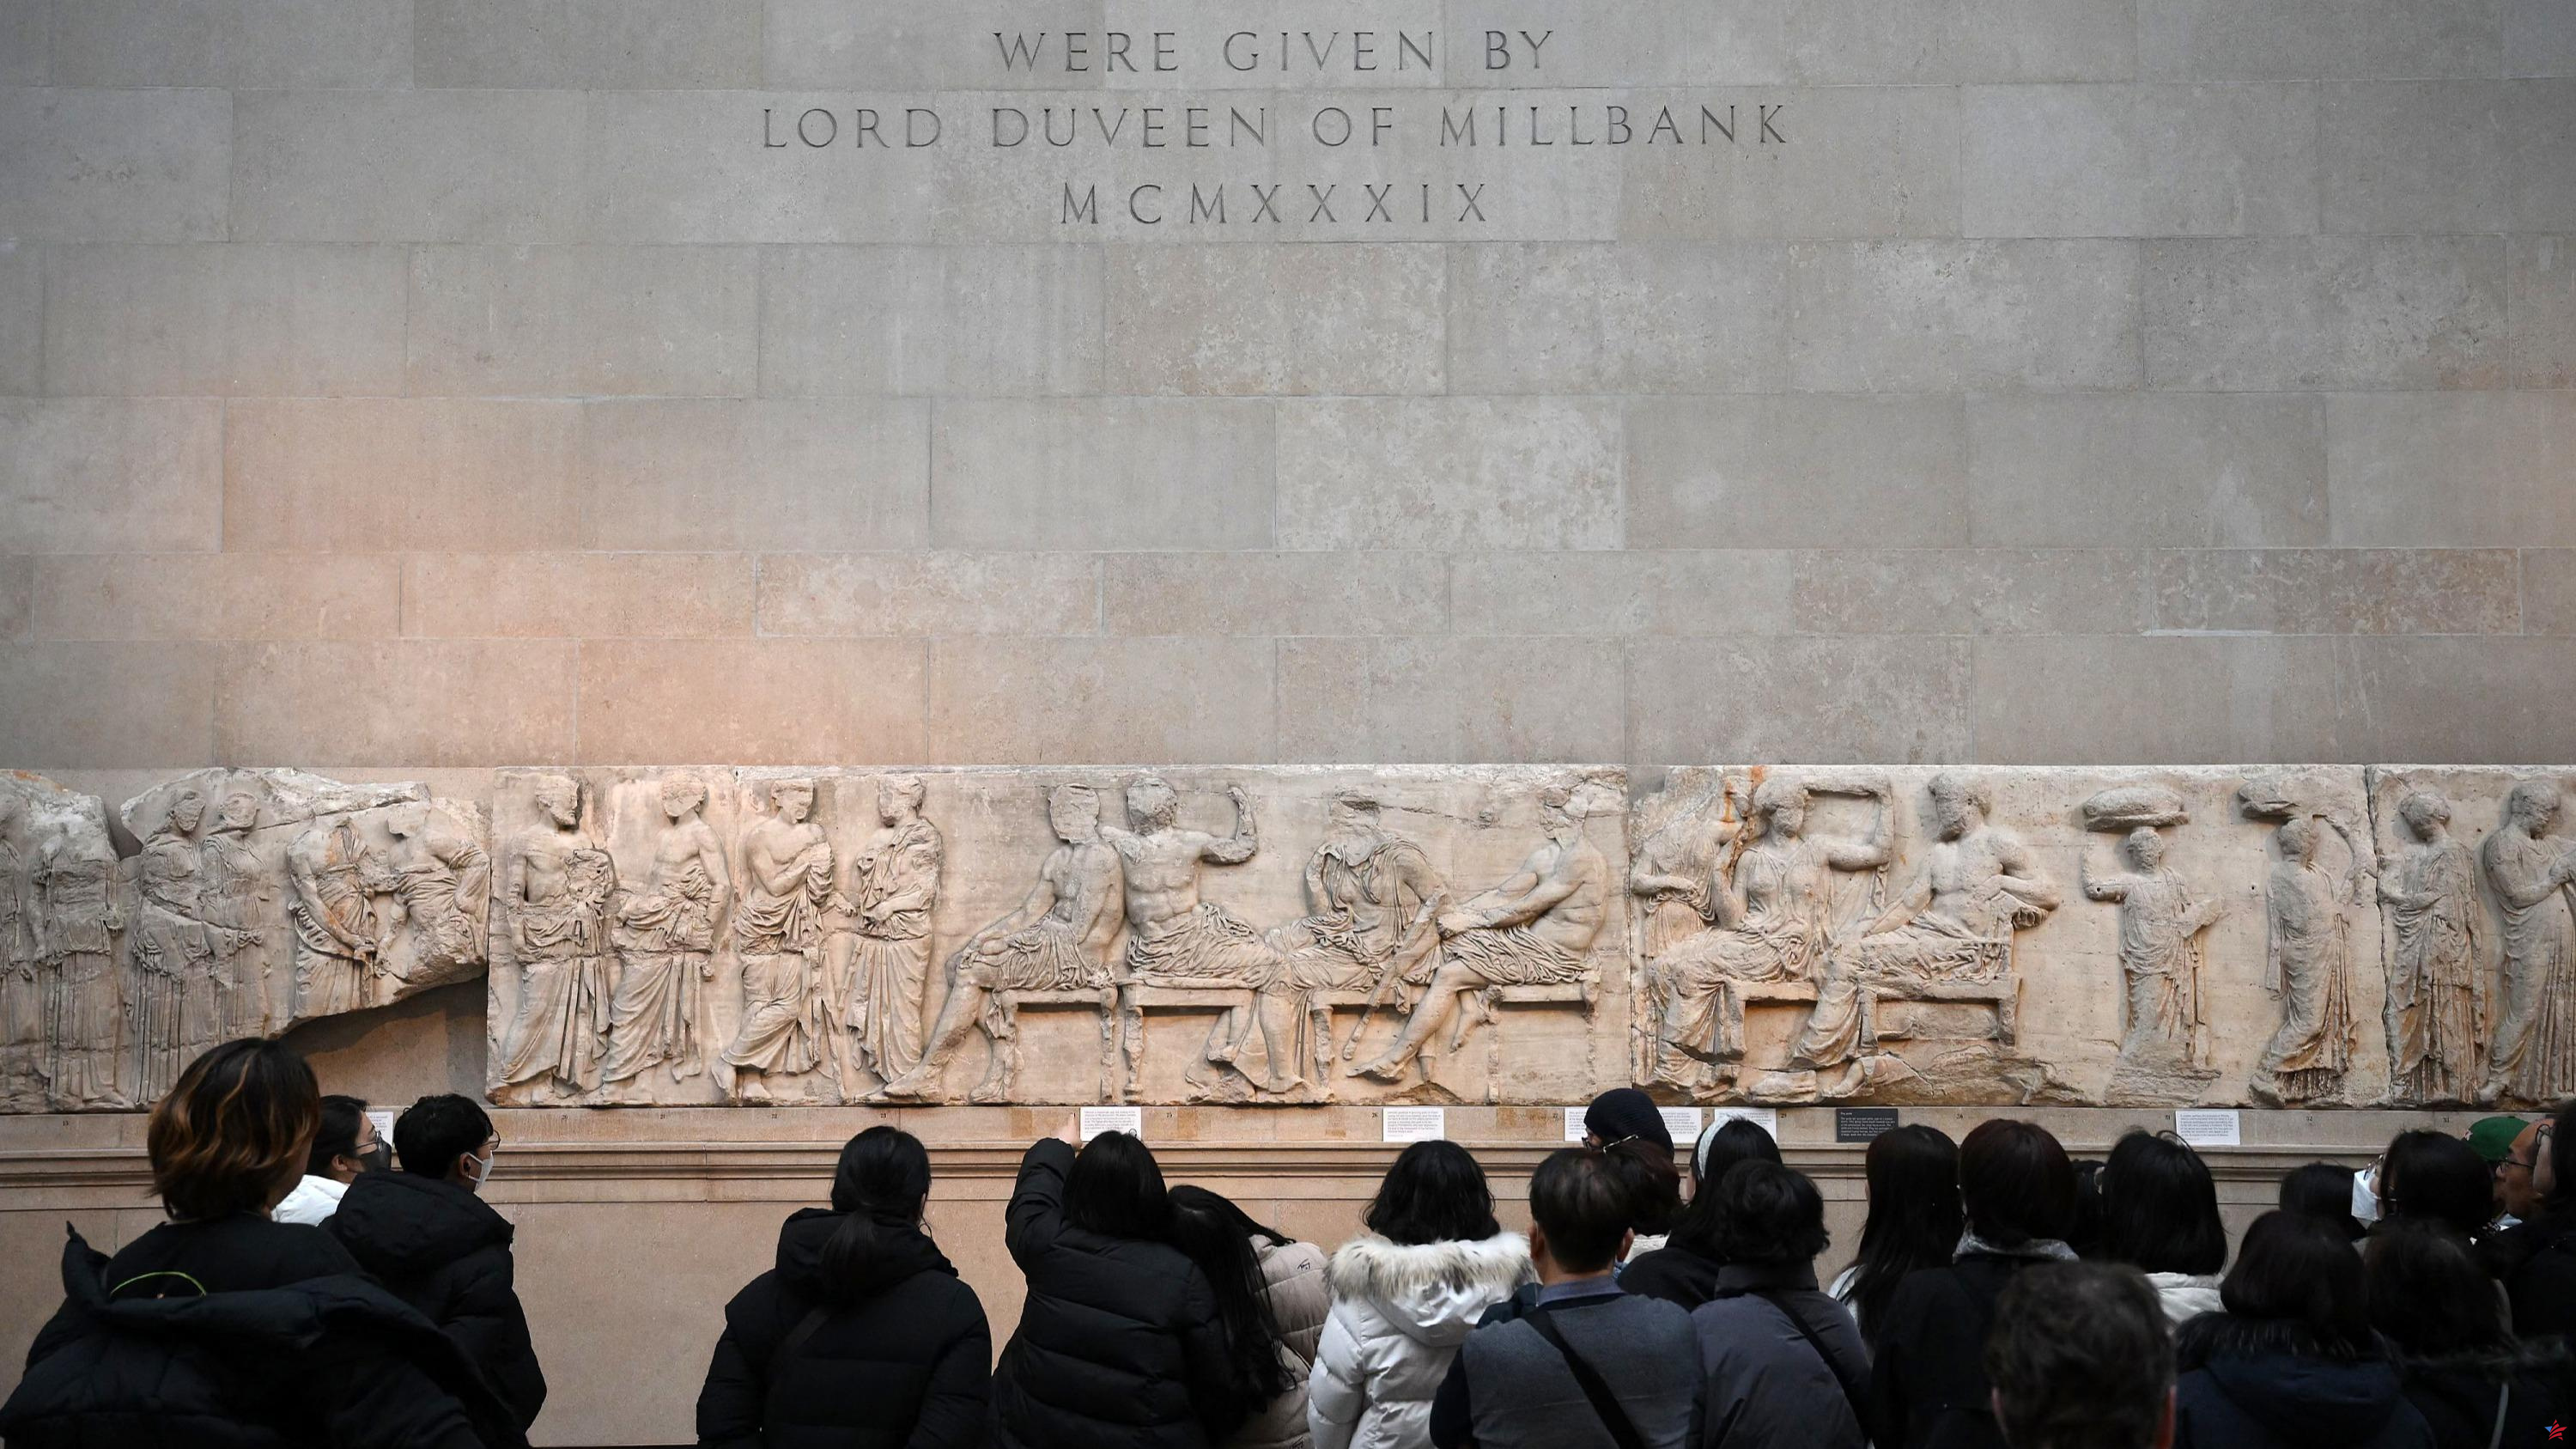 Atenas ofrece a Londres préstamos de tesoros arqueológicos a cambio de la devolución de los mármoles del Partenón